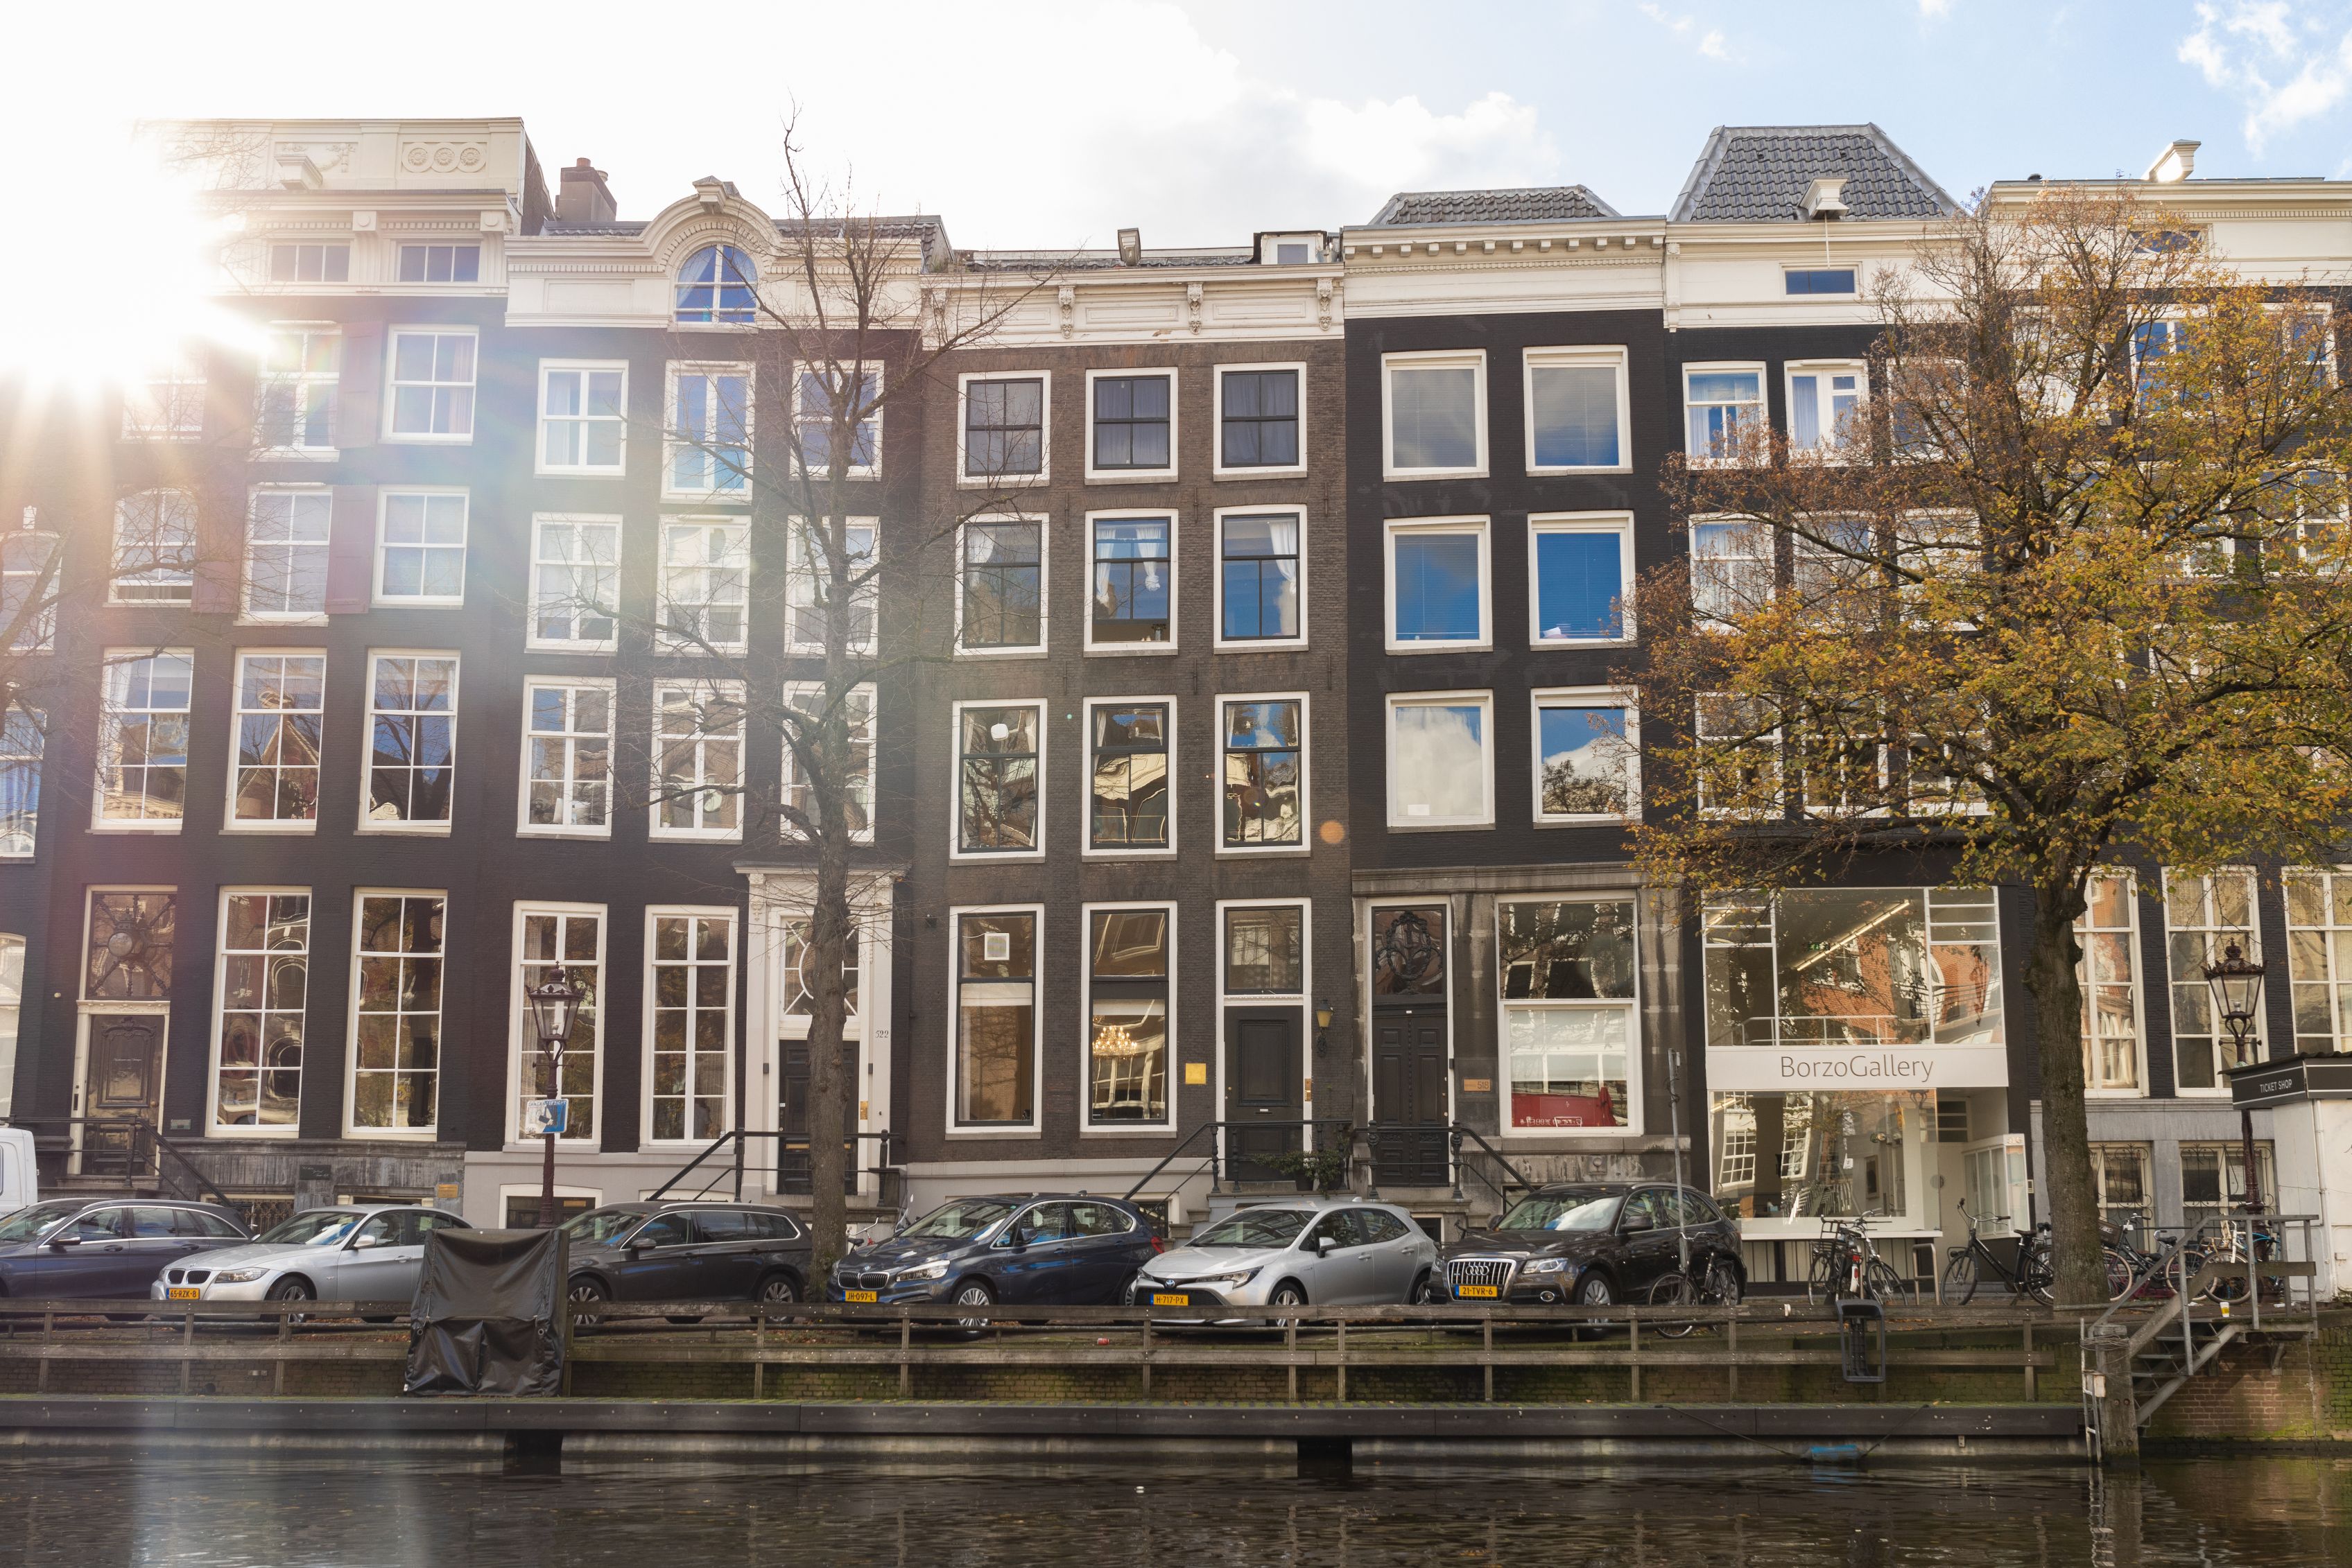 Virtueel Bedrijfsadres Huren | Amsterdam Desk Company - Amsterdam Desk Company